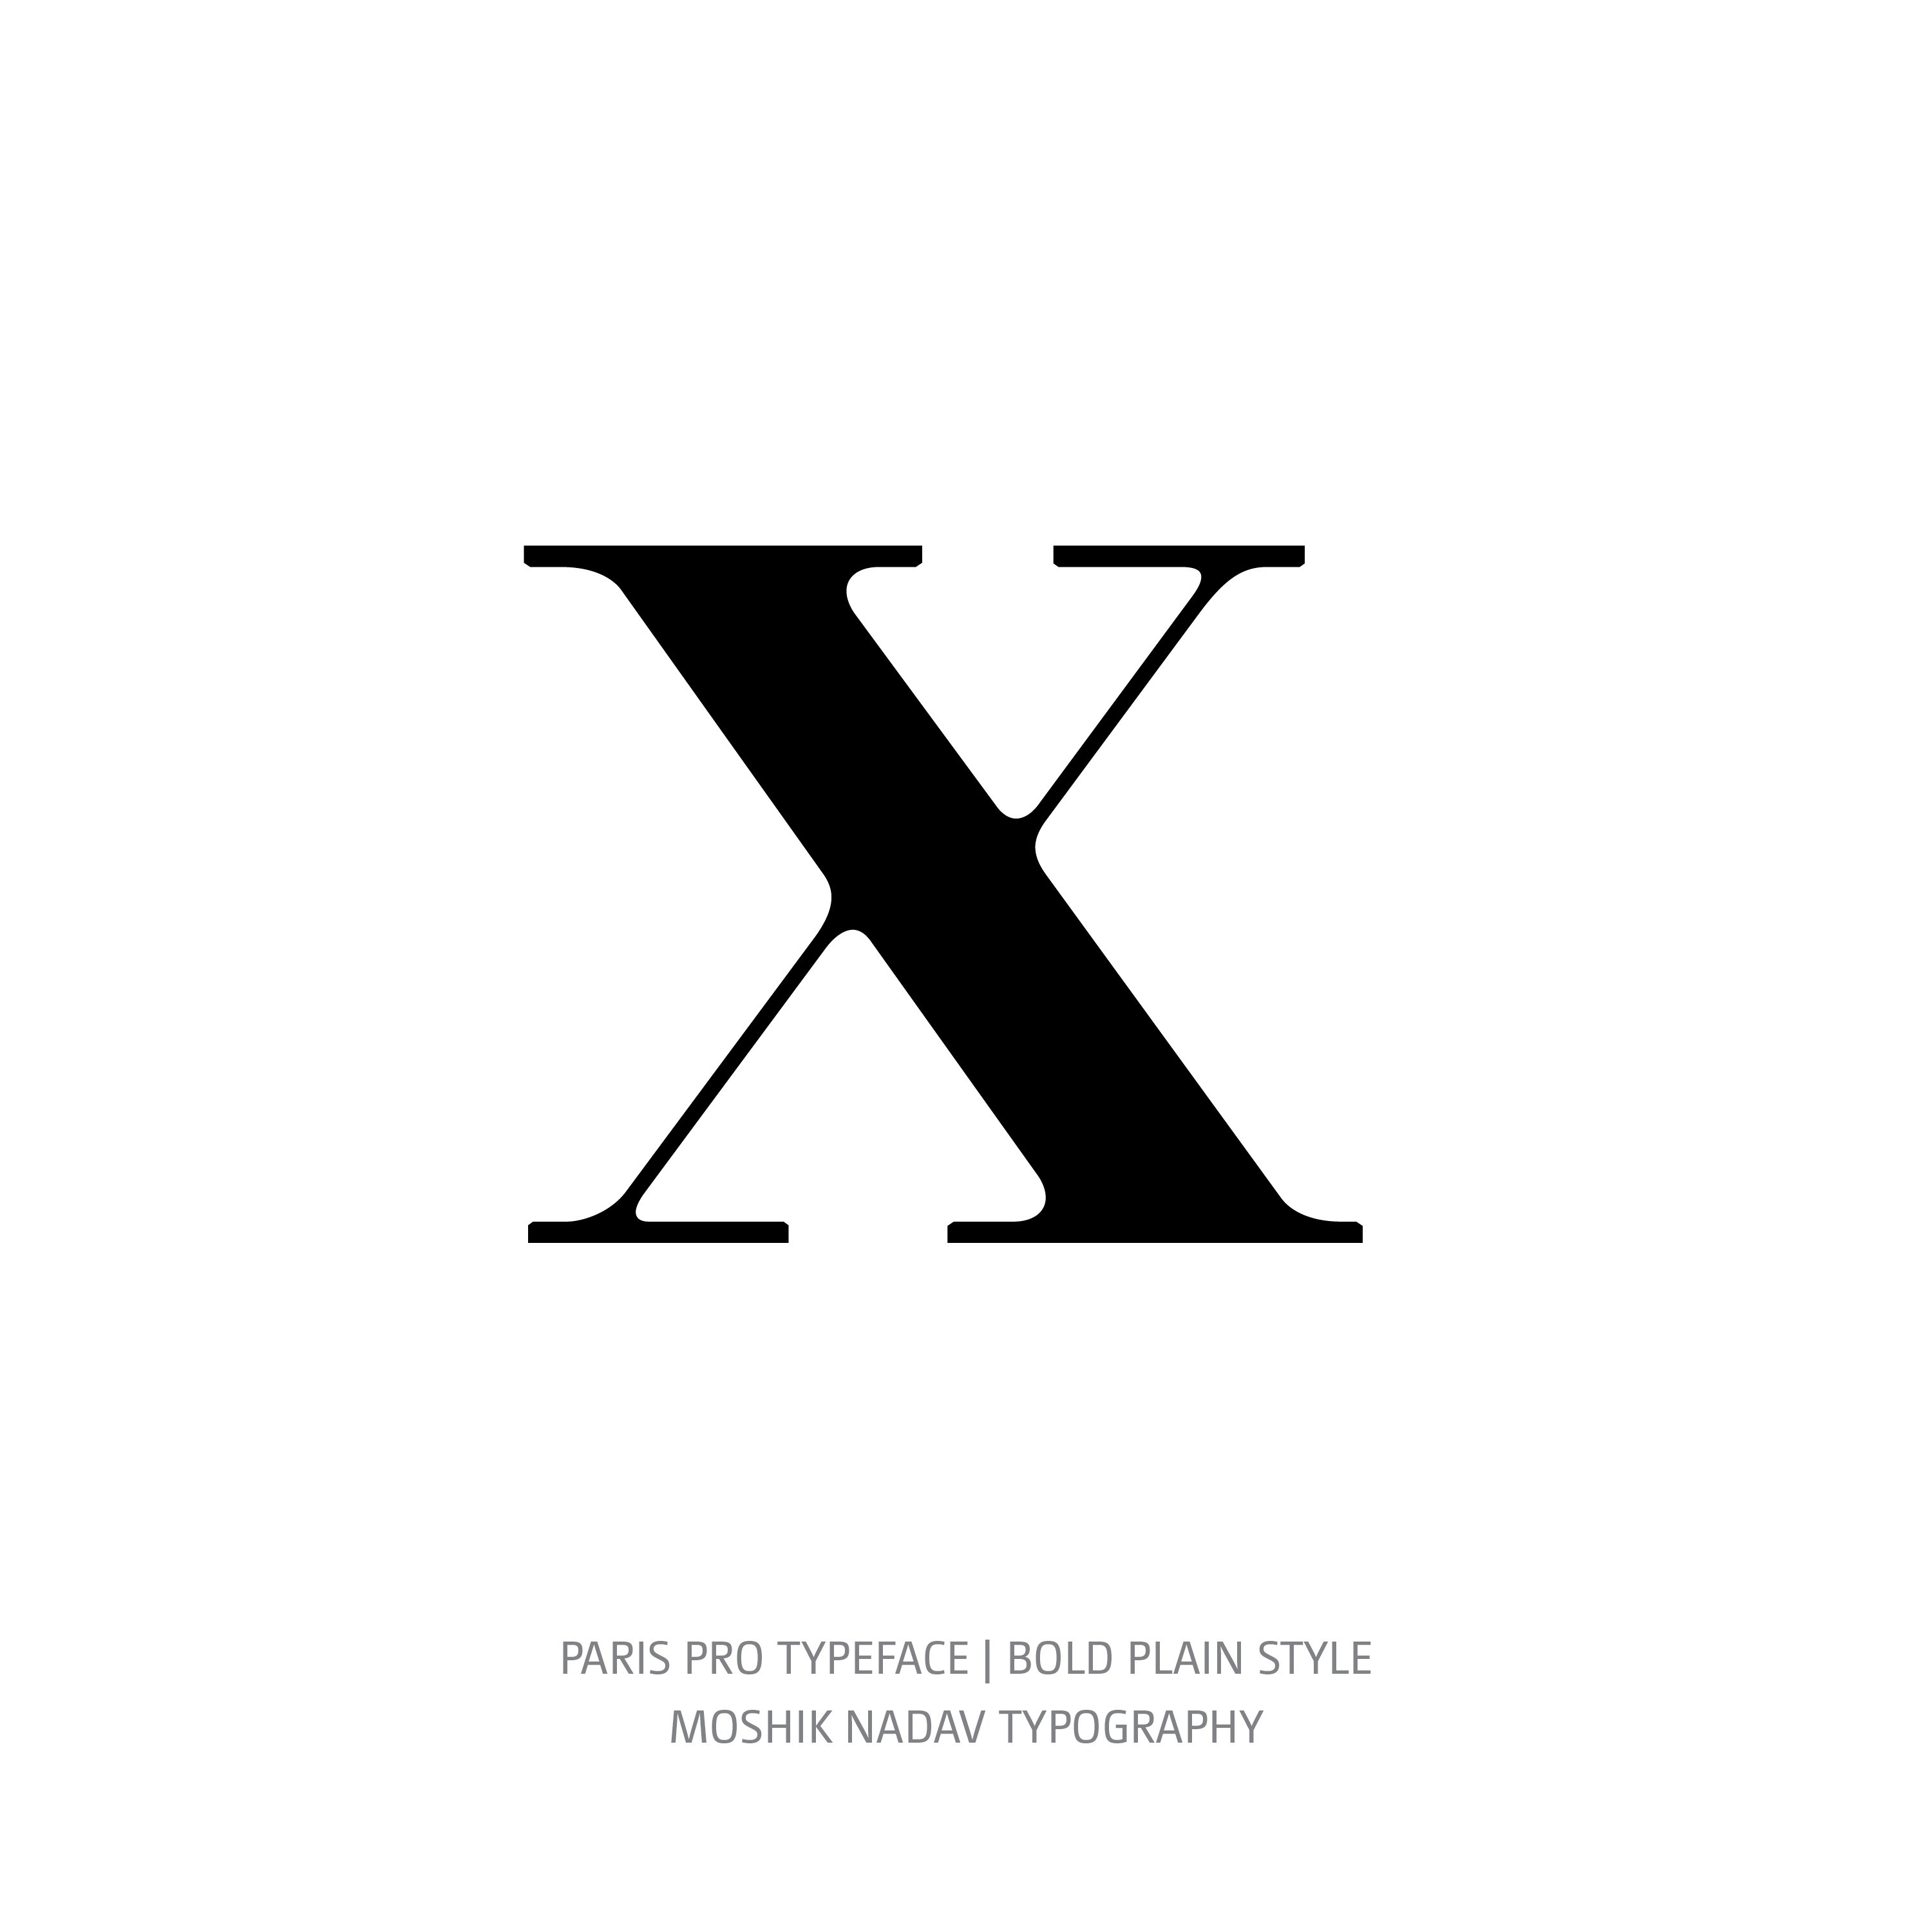 Paris Pro Typeface Bold Plain x